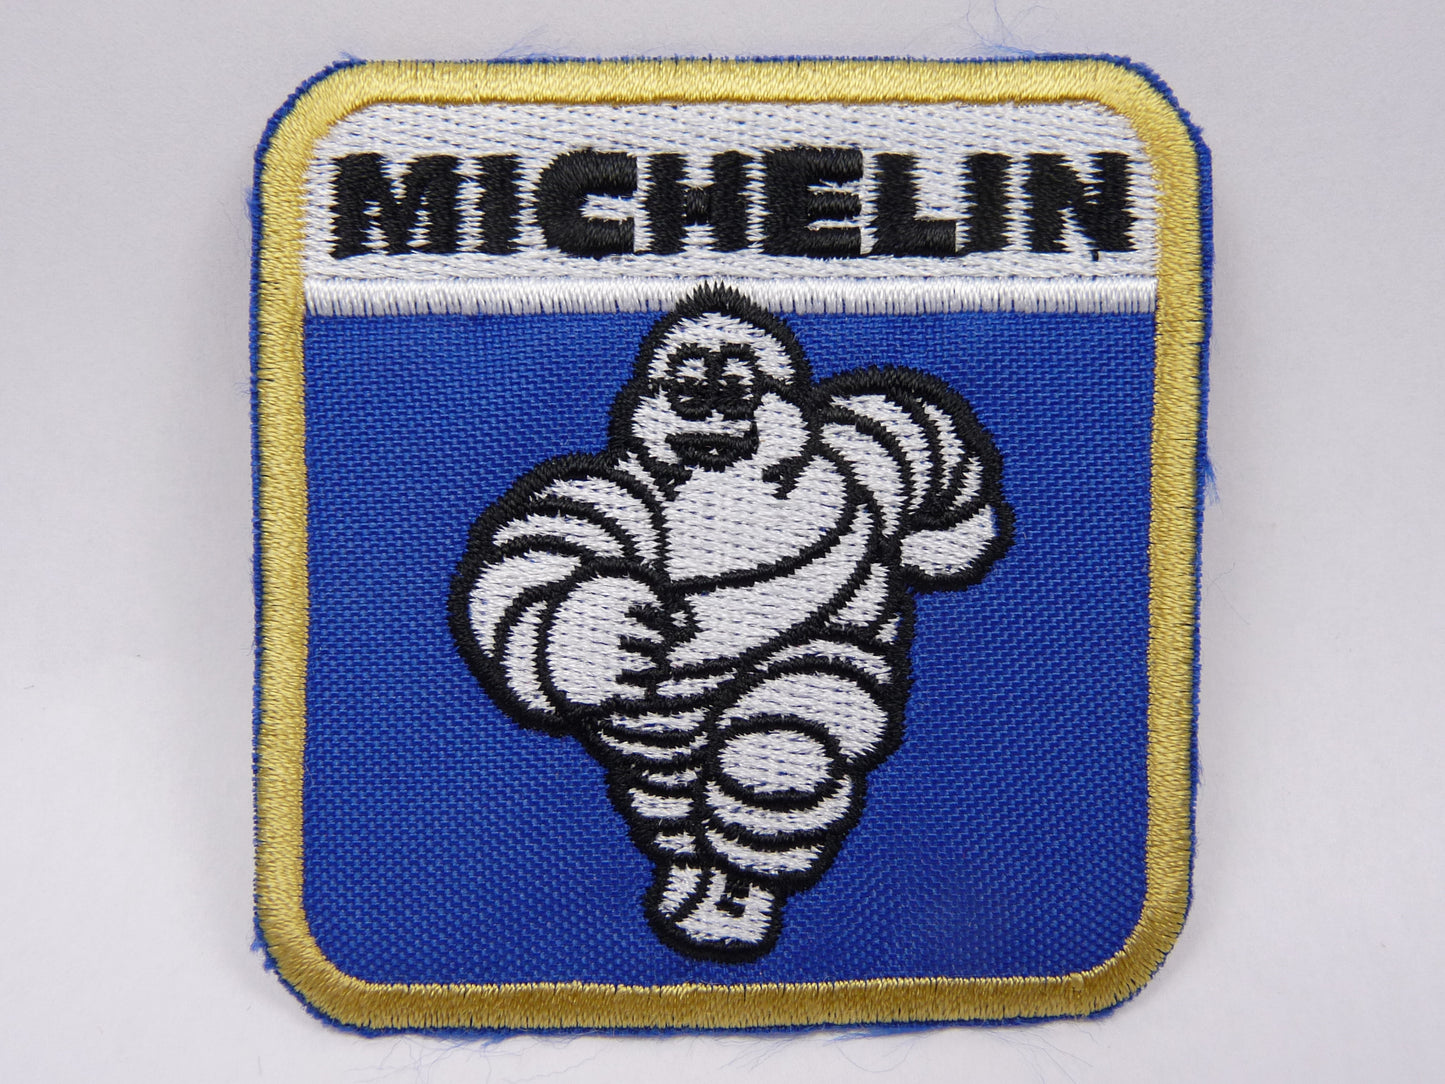 PTC99 Patch brodé thermocollé : logo Michelin largeur environ 6.5 cm hauteur environ 6.7 cm